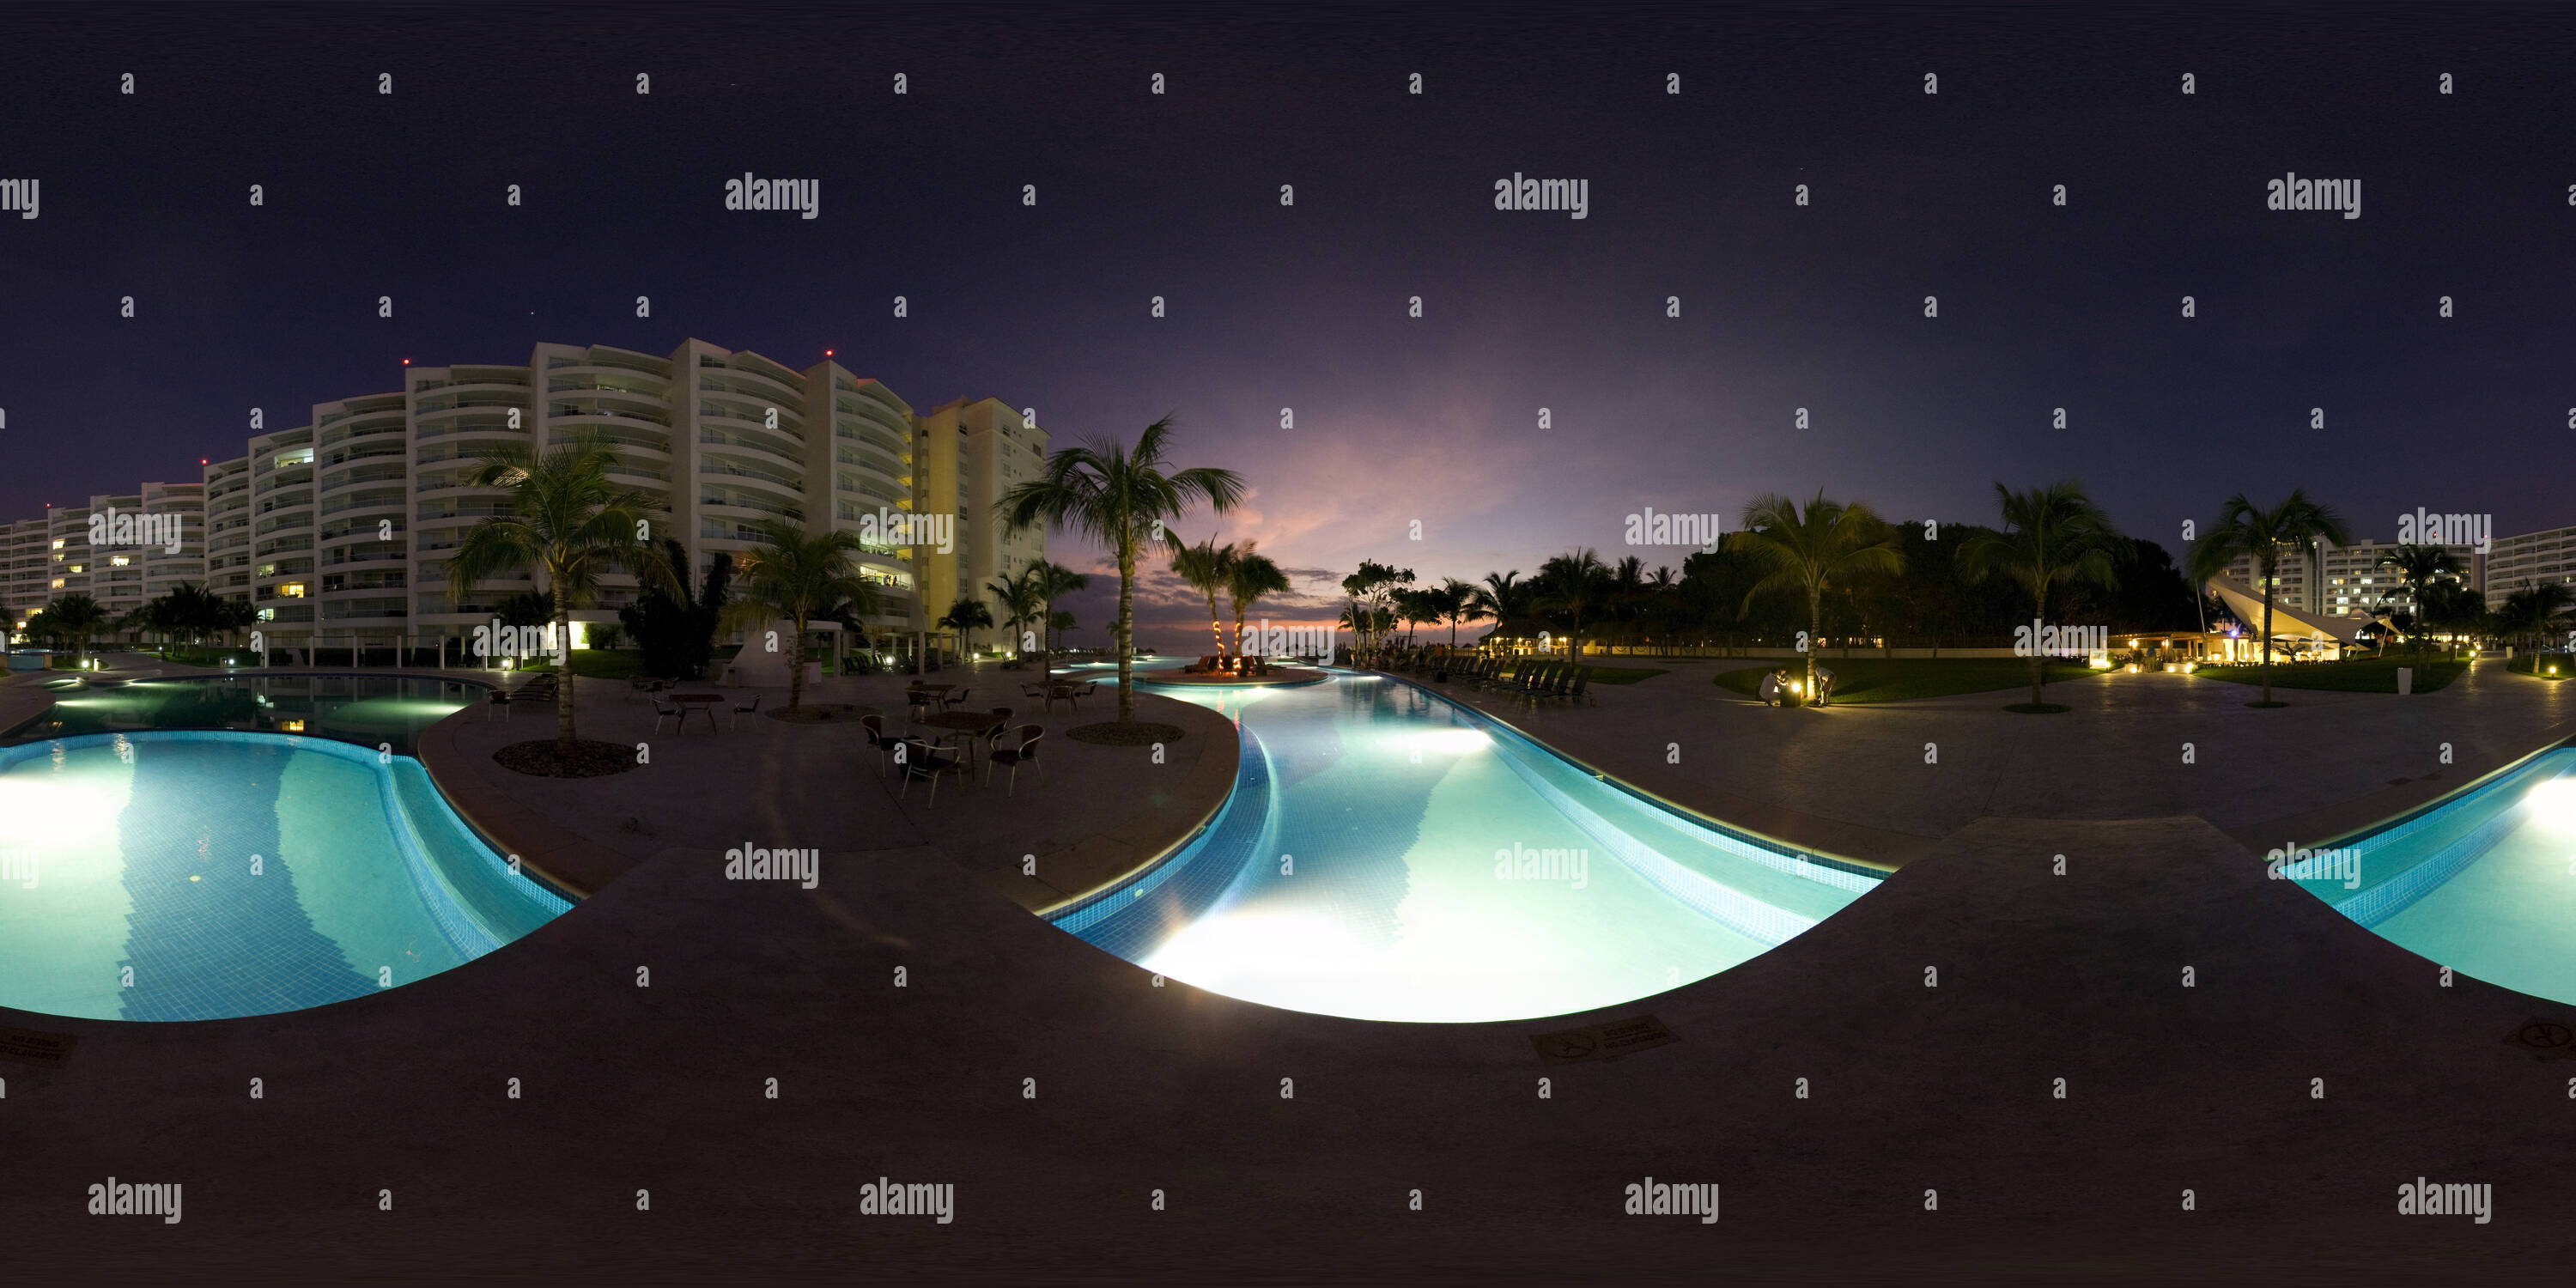 Vue panoramique à 360° de Dreams Resort piscine la nuit